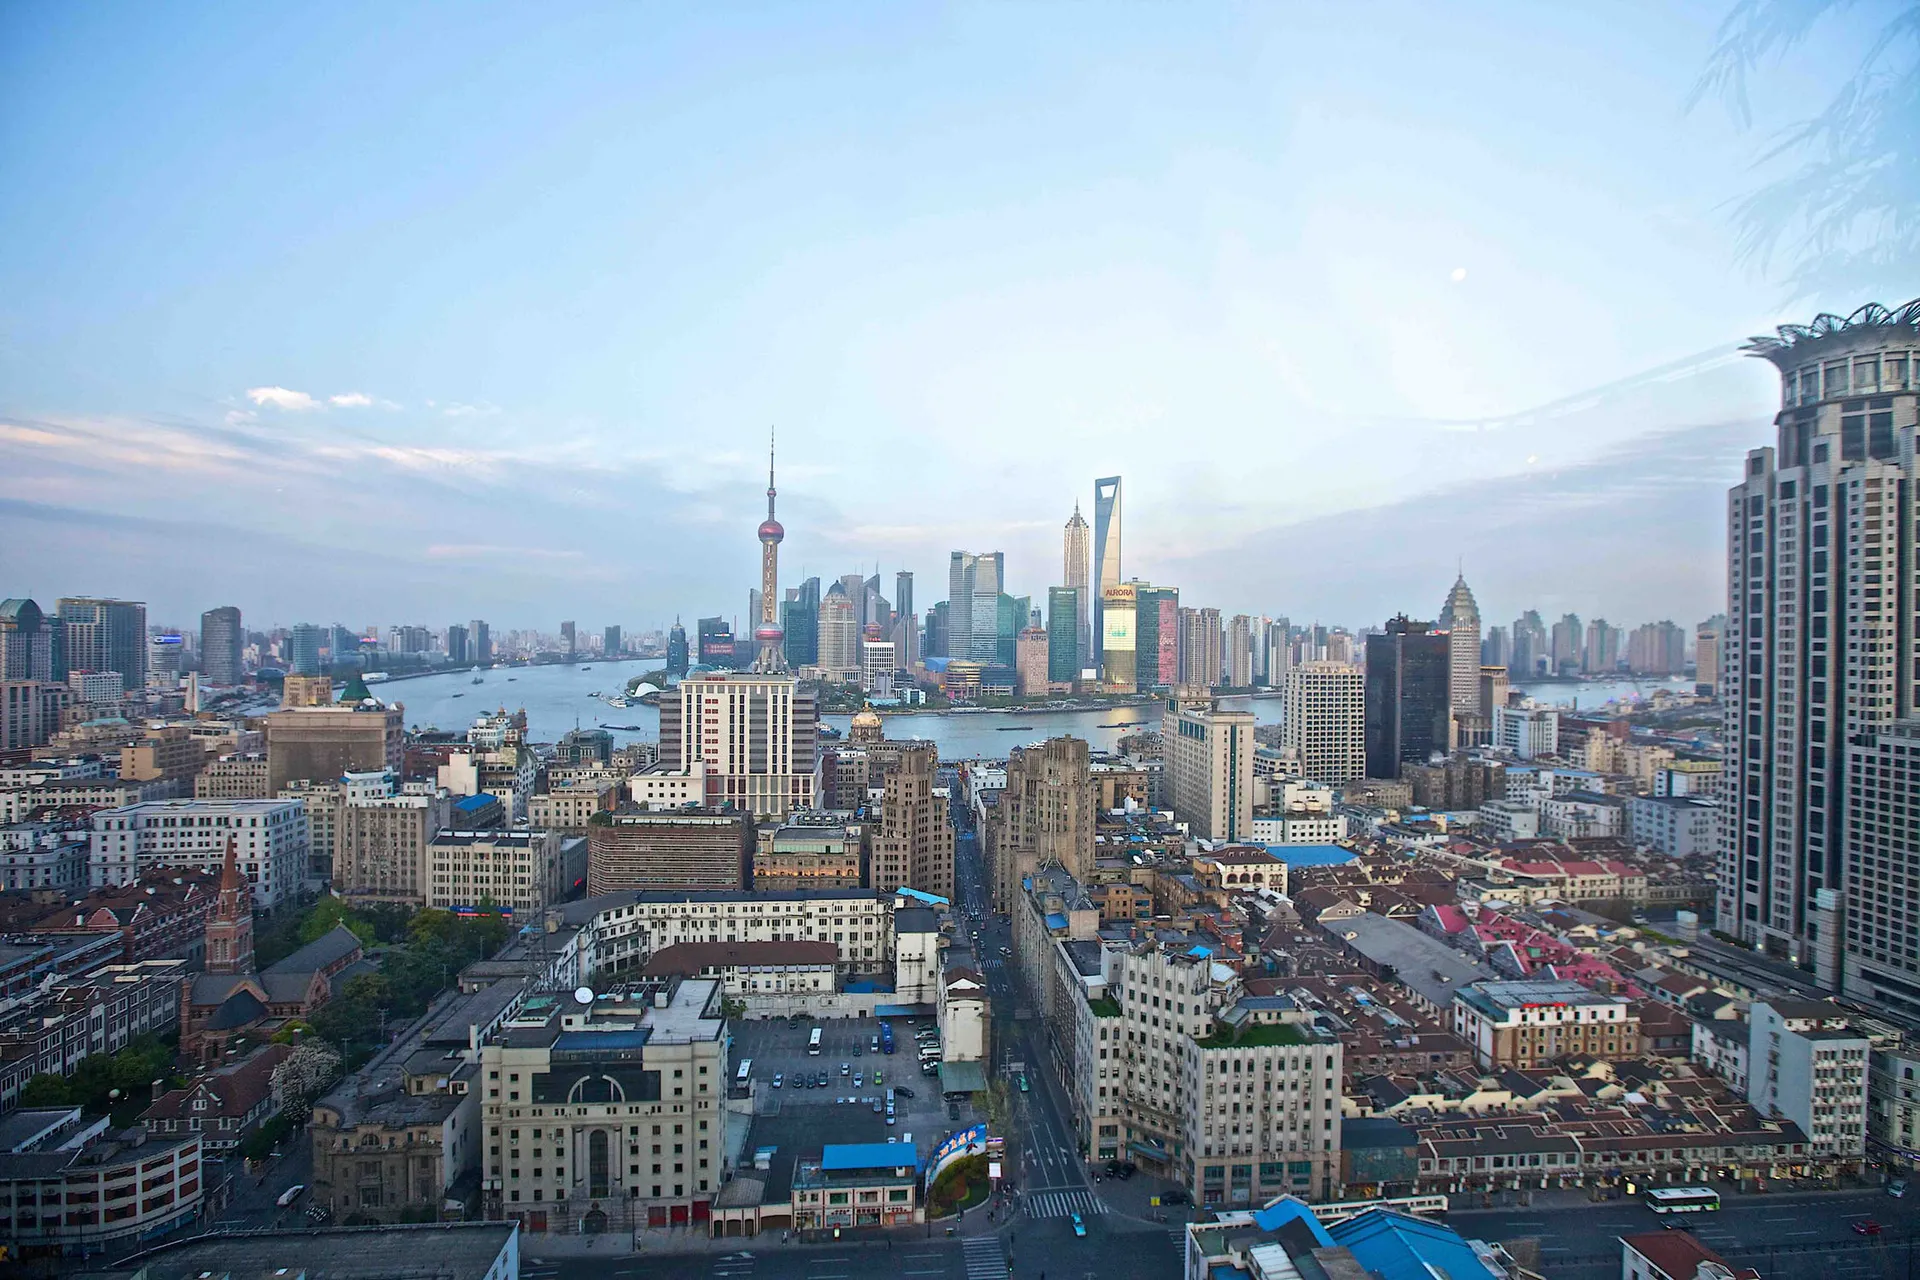 Shanghai City View